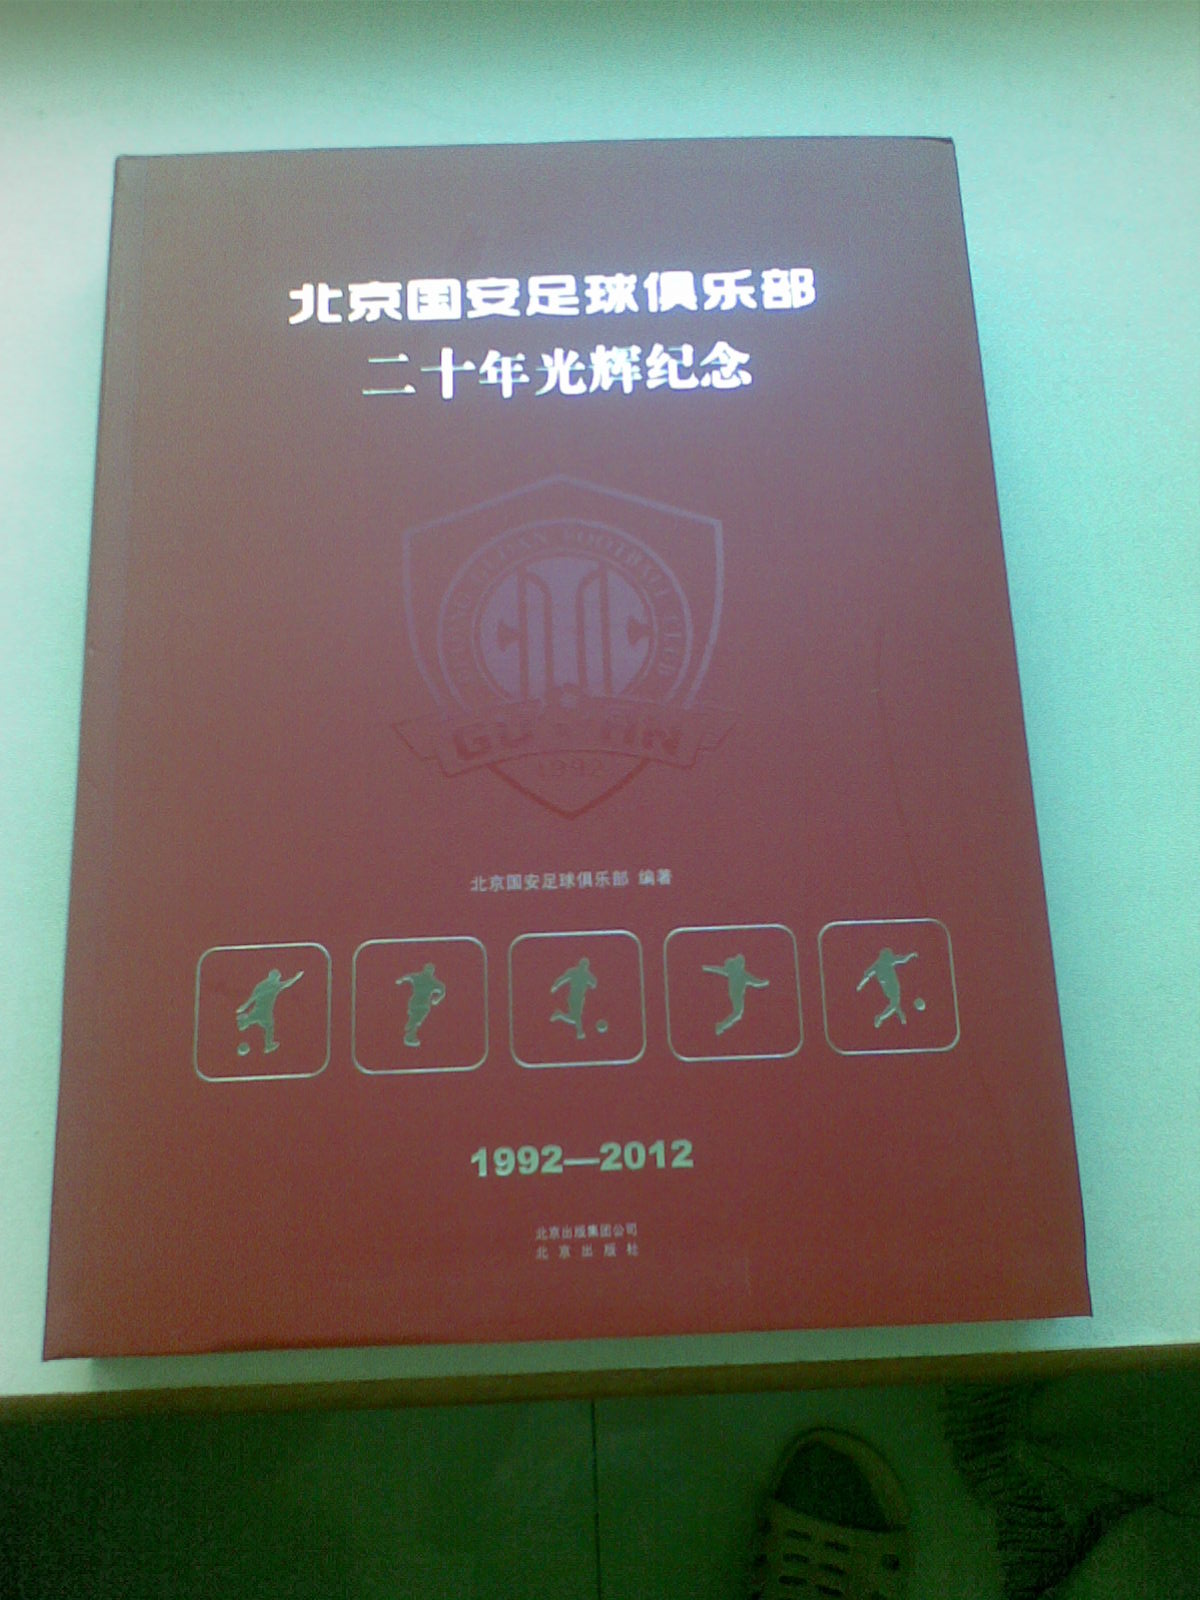 北京国安是从1994年职业化以来一直喜爱的家乡球队，自从2009年夺冠后，国安的文化产品就一直在买进，包括邮品、队刊，还有新京报出的20年纪念册，现在又买到了俱乐部自己出的20年纪念册。《北京国安足球俱乐部二十年辉煌纪念》是由北京国安足球俱乐部与北京出版集团合作推出的重量级作品，以官修正史的形式，讲述了国安俱乐部20年来的艰辛历程与辉煌成绩，其中大量珍贵照片都是首次披露。该书凝聚了北京老中青三代足球人的心血，写作、编辑耗时18个月，共计43万字，限量印刷一万本，每本都有独特编号，非常具有珍藏价值。国安是自中国足球联赛职业化以来唯一一支没有变更过经营主体的球队，在中国足坛占有举足轻重的地位。记录与记忆，是给予这样一支承载城市梦想、凝聚群众“正能量”的竞技团队的最好礼物。该书在的首发与销售无疑将推动图书在电商领域站得更高，走得更远。　　作为国内知名的电商企业，是俱乐部携手的优质合作伙伴。图书用户已超千万，并且一直致力于为读书人打造最便捷、实惠的网购图书“圣地”。相信在双方的共同努力下，一定可以“让最优秀的出版社用最优秀的印刷厂把最优秀的俱乐部用最优秀的图书通过最优秀的渠道奉献给最优秀的球迷！”　　此次能够获得该书的独家首发权，确属名至实归。目前，注册用户已超过1亿，自2010年11月上线图书品类之后，购买用户已超过1400万人，月活跃购买用户达200多万人，以年度200%、100%的增长速度，跻身于图书行业零售前3甲。凭借强大的自建物流体系、优质的页面资源和精准营销方案，不仅能在市场推广中帮助国安提升品牌效应，也可为广大球迷提供更好的网购体验和更多的增值服务。　　首发式上，向国安俱乐部赠送了吉祥物--JOY造型的金属奖杯，上面还刻有中国足球俱乐部第一首正式队歌--“国安永远争第一”的歌名；而国安俱乐部则向赠送了携有全体俱乐部球员签名、背号为“618”的专属国安队服,极具纪念意义。此外，还在现场为北京出版集团颁发了“最有价值供应商”奖牌，双方对未来的多样化合作发展抱有高度的信心和期待。　　出席发布会的媒体人士纷纷表示，国安纪念图书在的首发，是互联网时代图书营销的新思路、新突破，作为国内领先的电商平台，也为图书行业的多样化发展提供了新鲜血液。据了解，今年已与中超签订了长达5年的战略合作协议。在该协议下，将逐步从赛事平台合作，向各俱乐部深层携手转变，《北京国安足球俱乐部二十年辉煌纪念》的首发可以视为这一营销趋势的试金石，未来还会有更多中超俱乐部的衍生产品在面世，惠及广大足球爱好者。